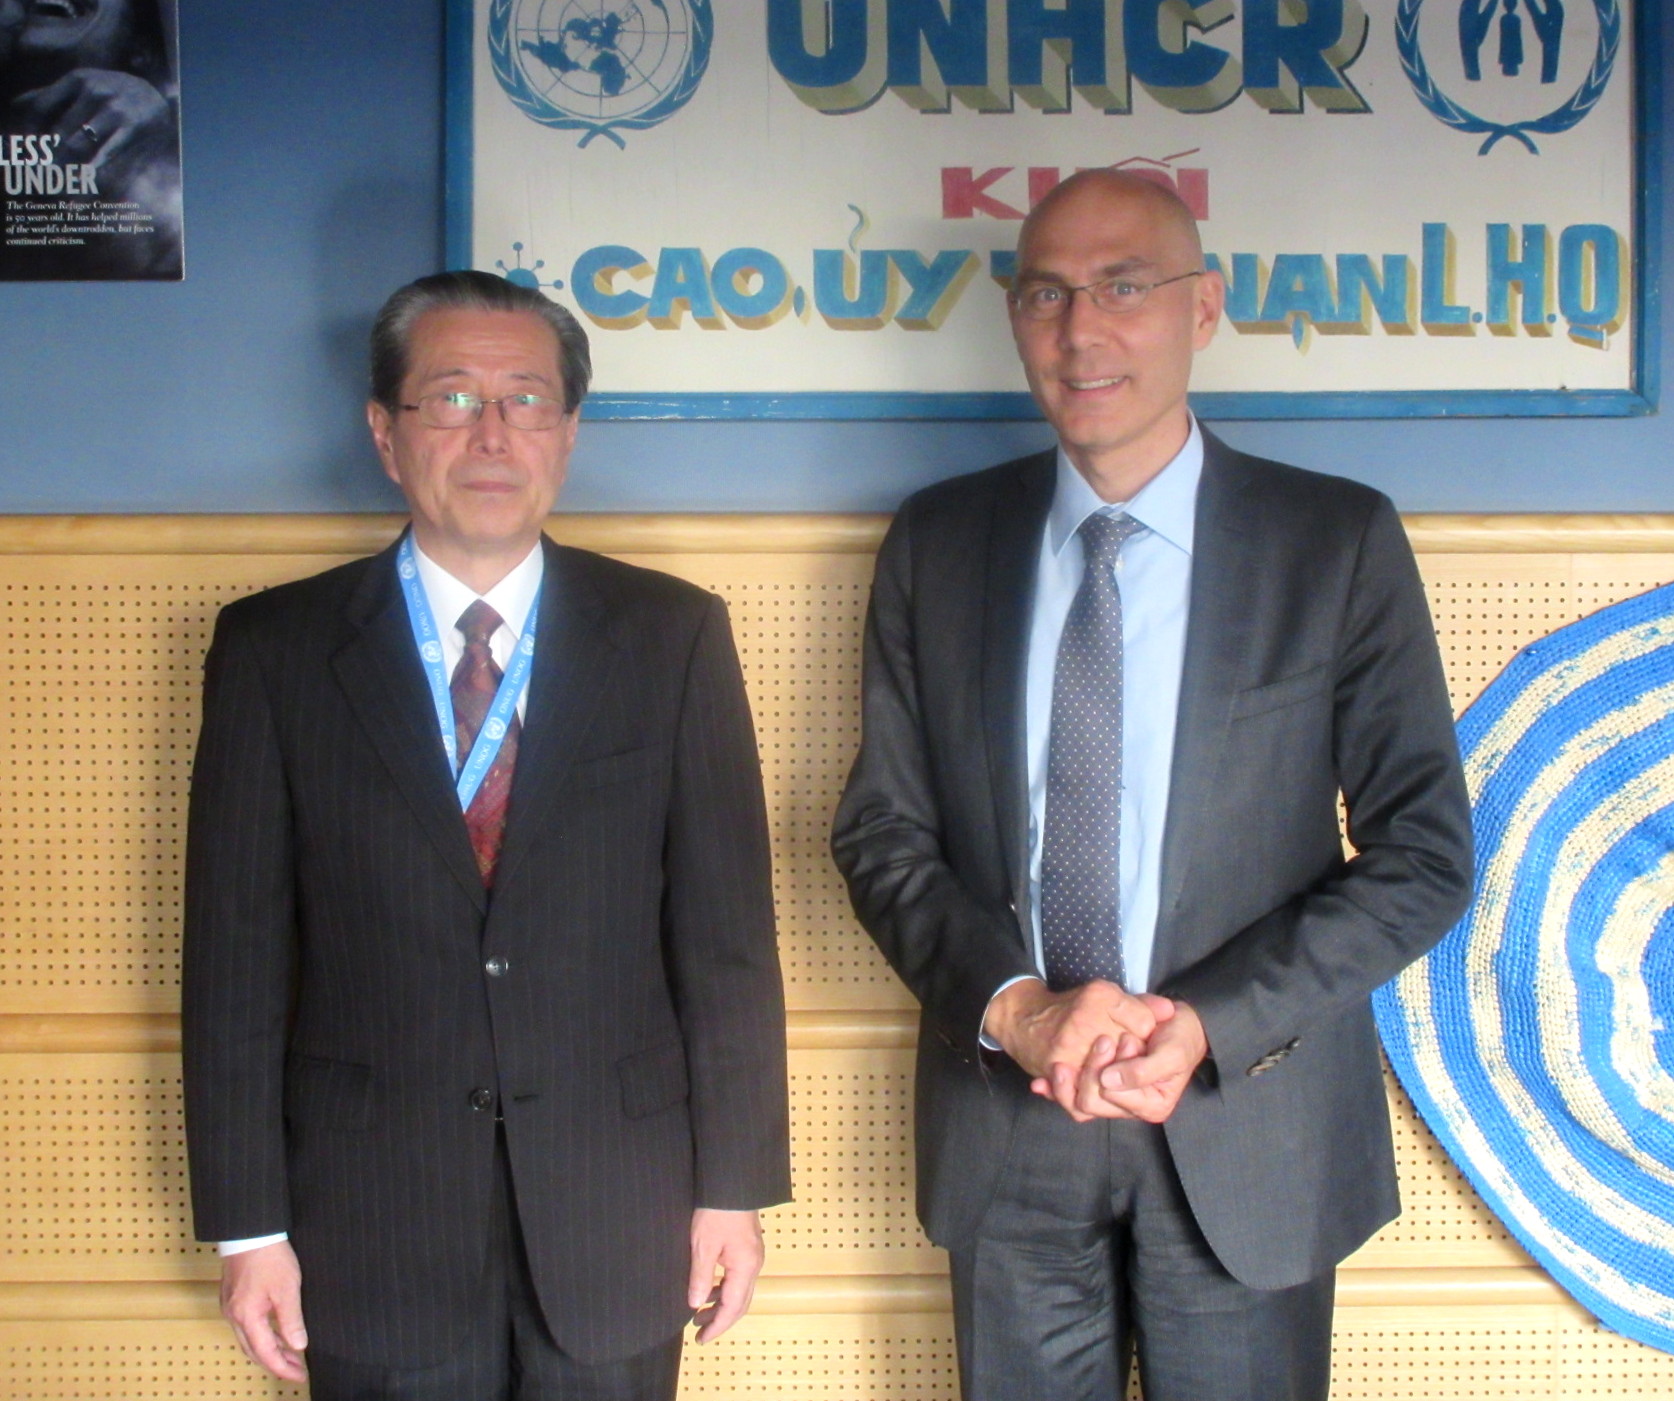 ターク国連難民高等弁務官事務所(UNHCR)高等弁務官補との面会